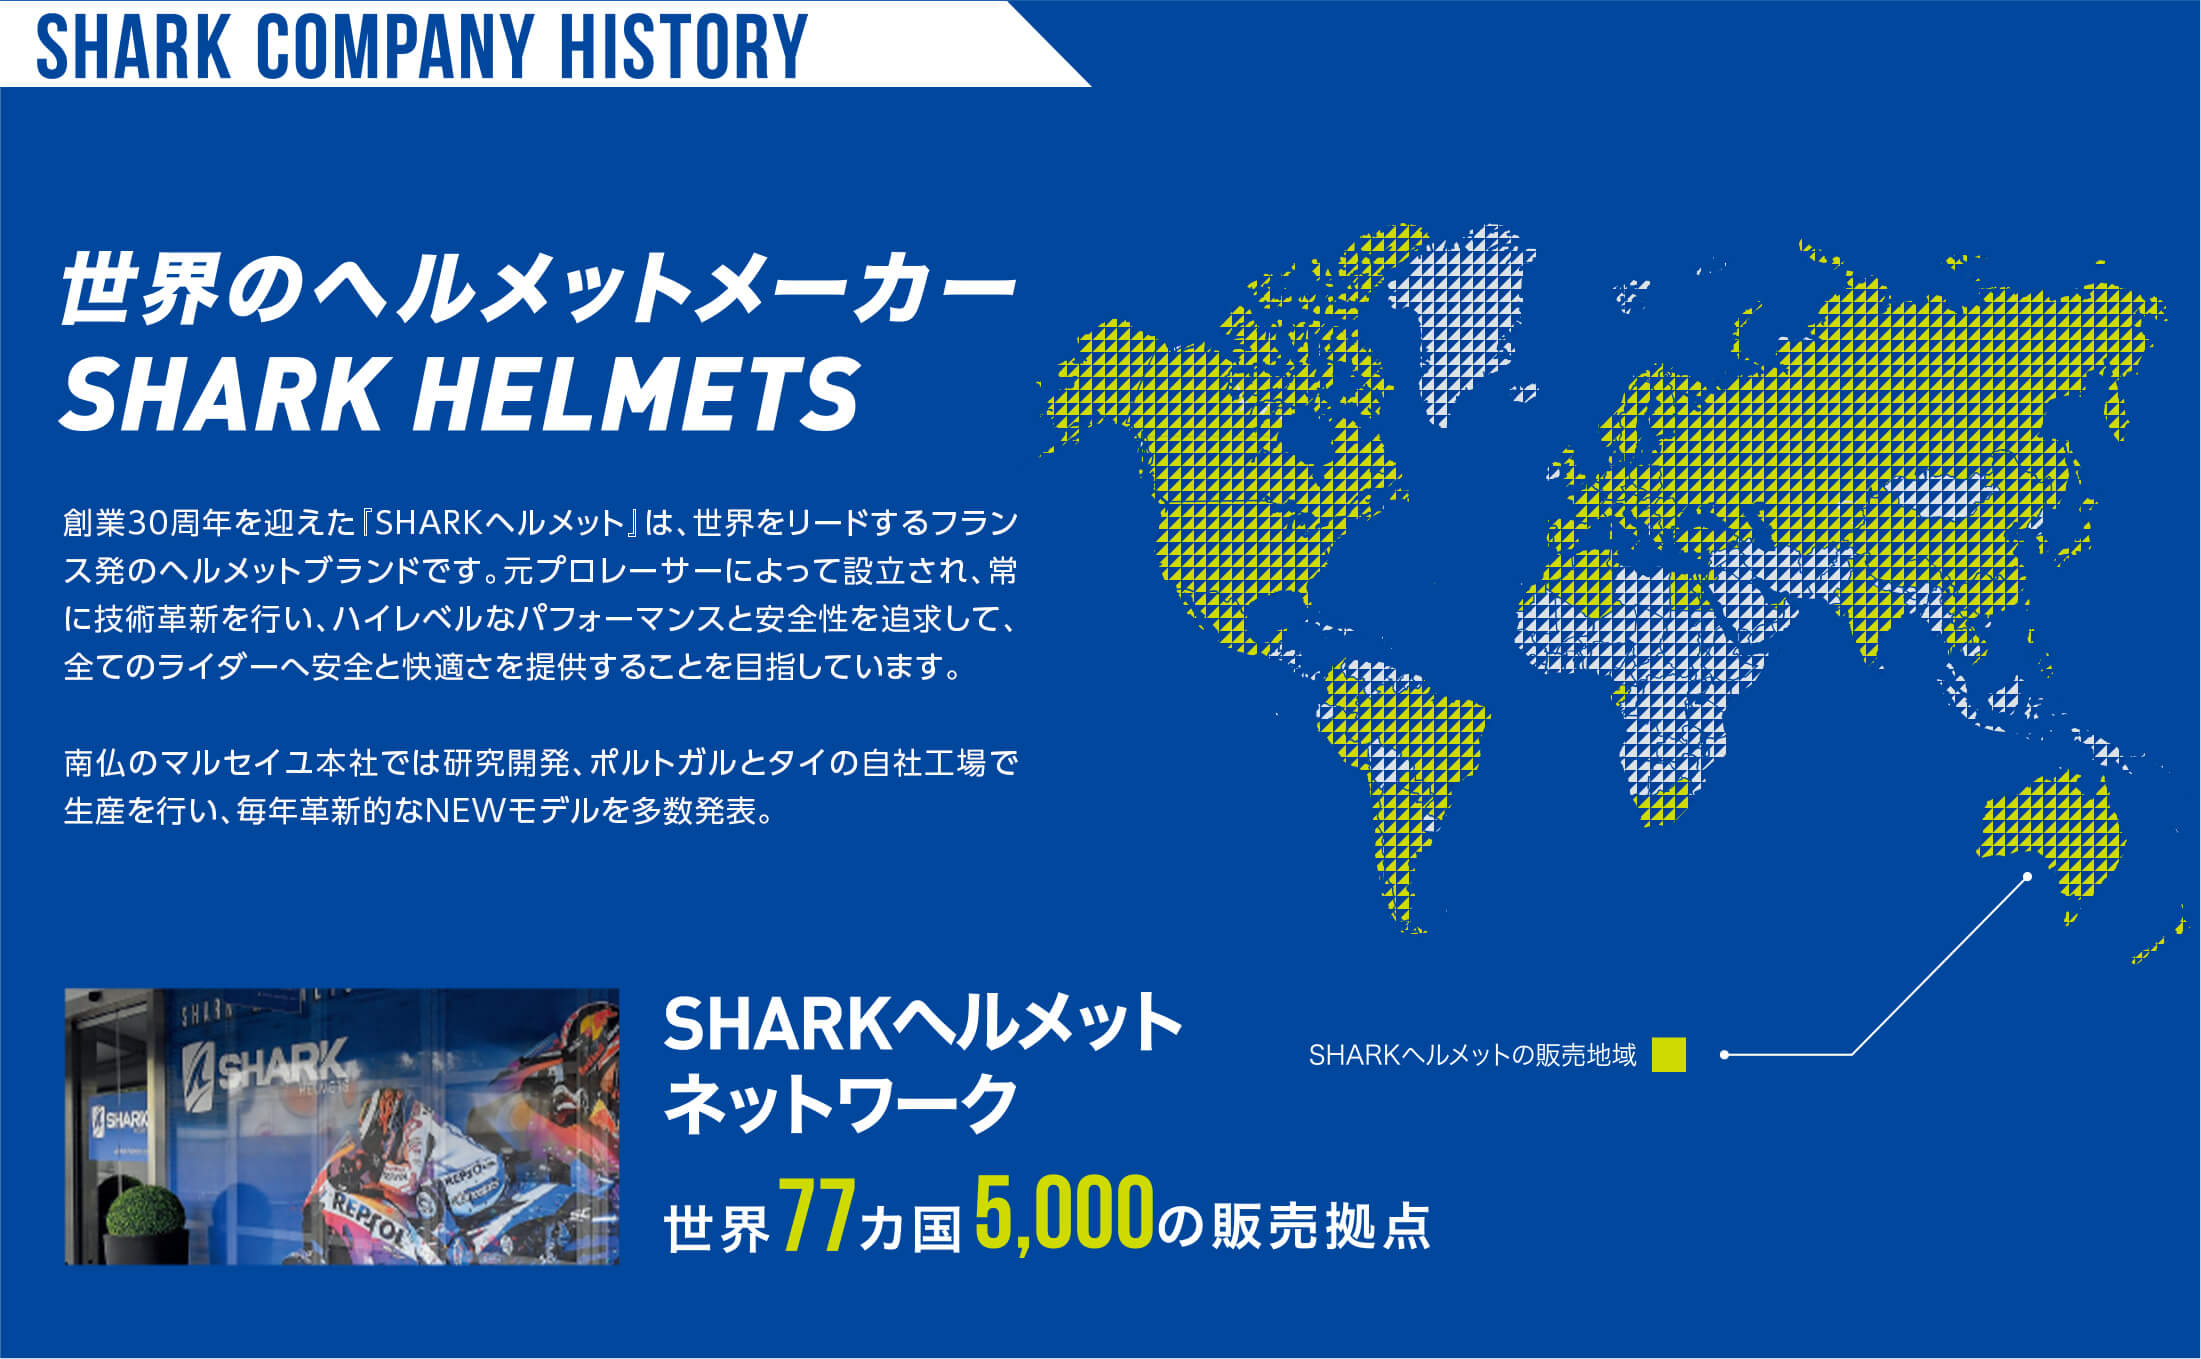 世界のヘルメットメーカー 世界77ヵ国、5,000の販売拠点　創業30年を迎えた「SHARKヘルメット」は、世界をリードするプランス発のヘルメットブランドです。元プロレーサーによって設立され、常に技術革新を行い、ハイレベルなパフォーマンスと安全性を追求して、全てのライダーへ安全と快適さを提供することを目指しています。南仏のマルセイユ本社では、研究開発、ポルトガルとタイの自社工場で生産を行い、毎年核心的なNEWモデルを多数発表。